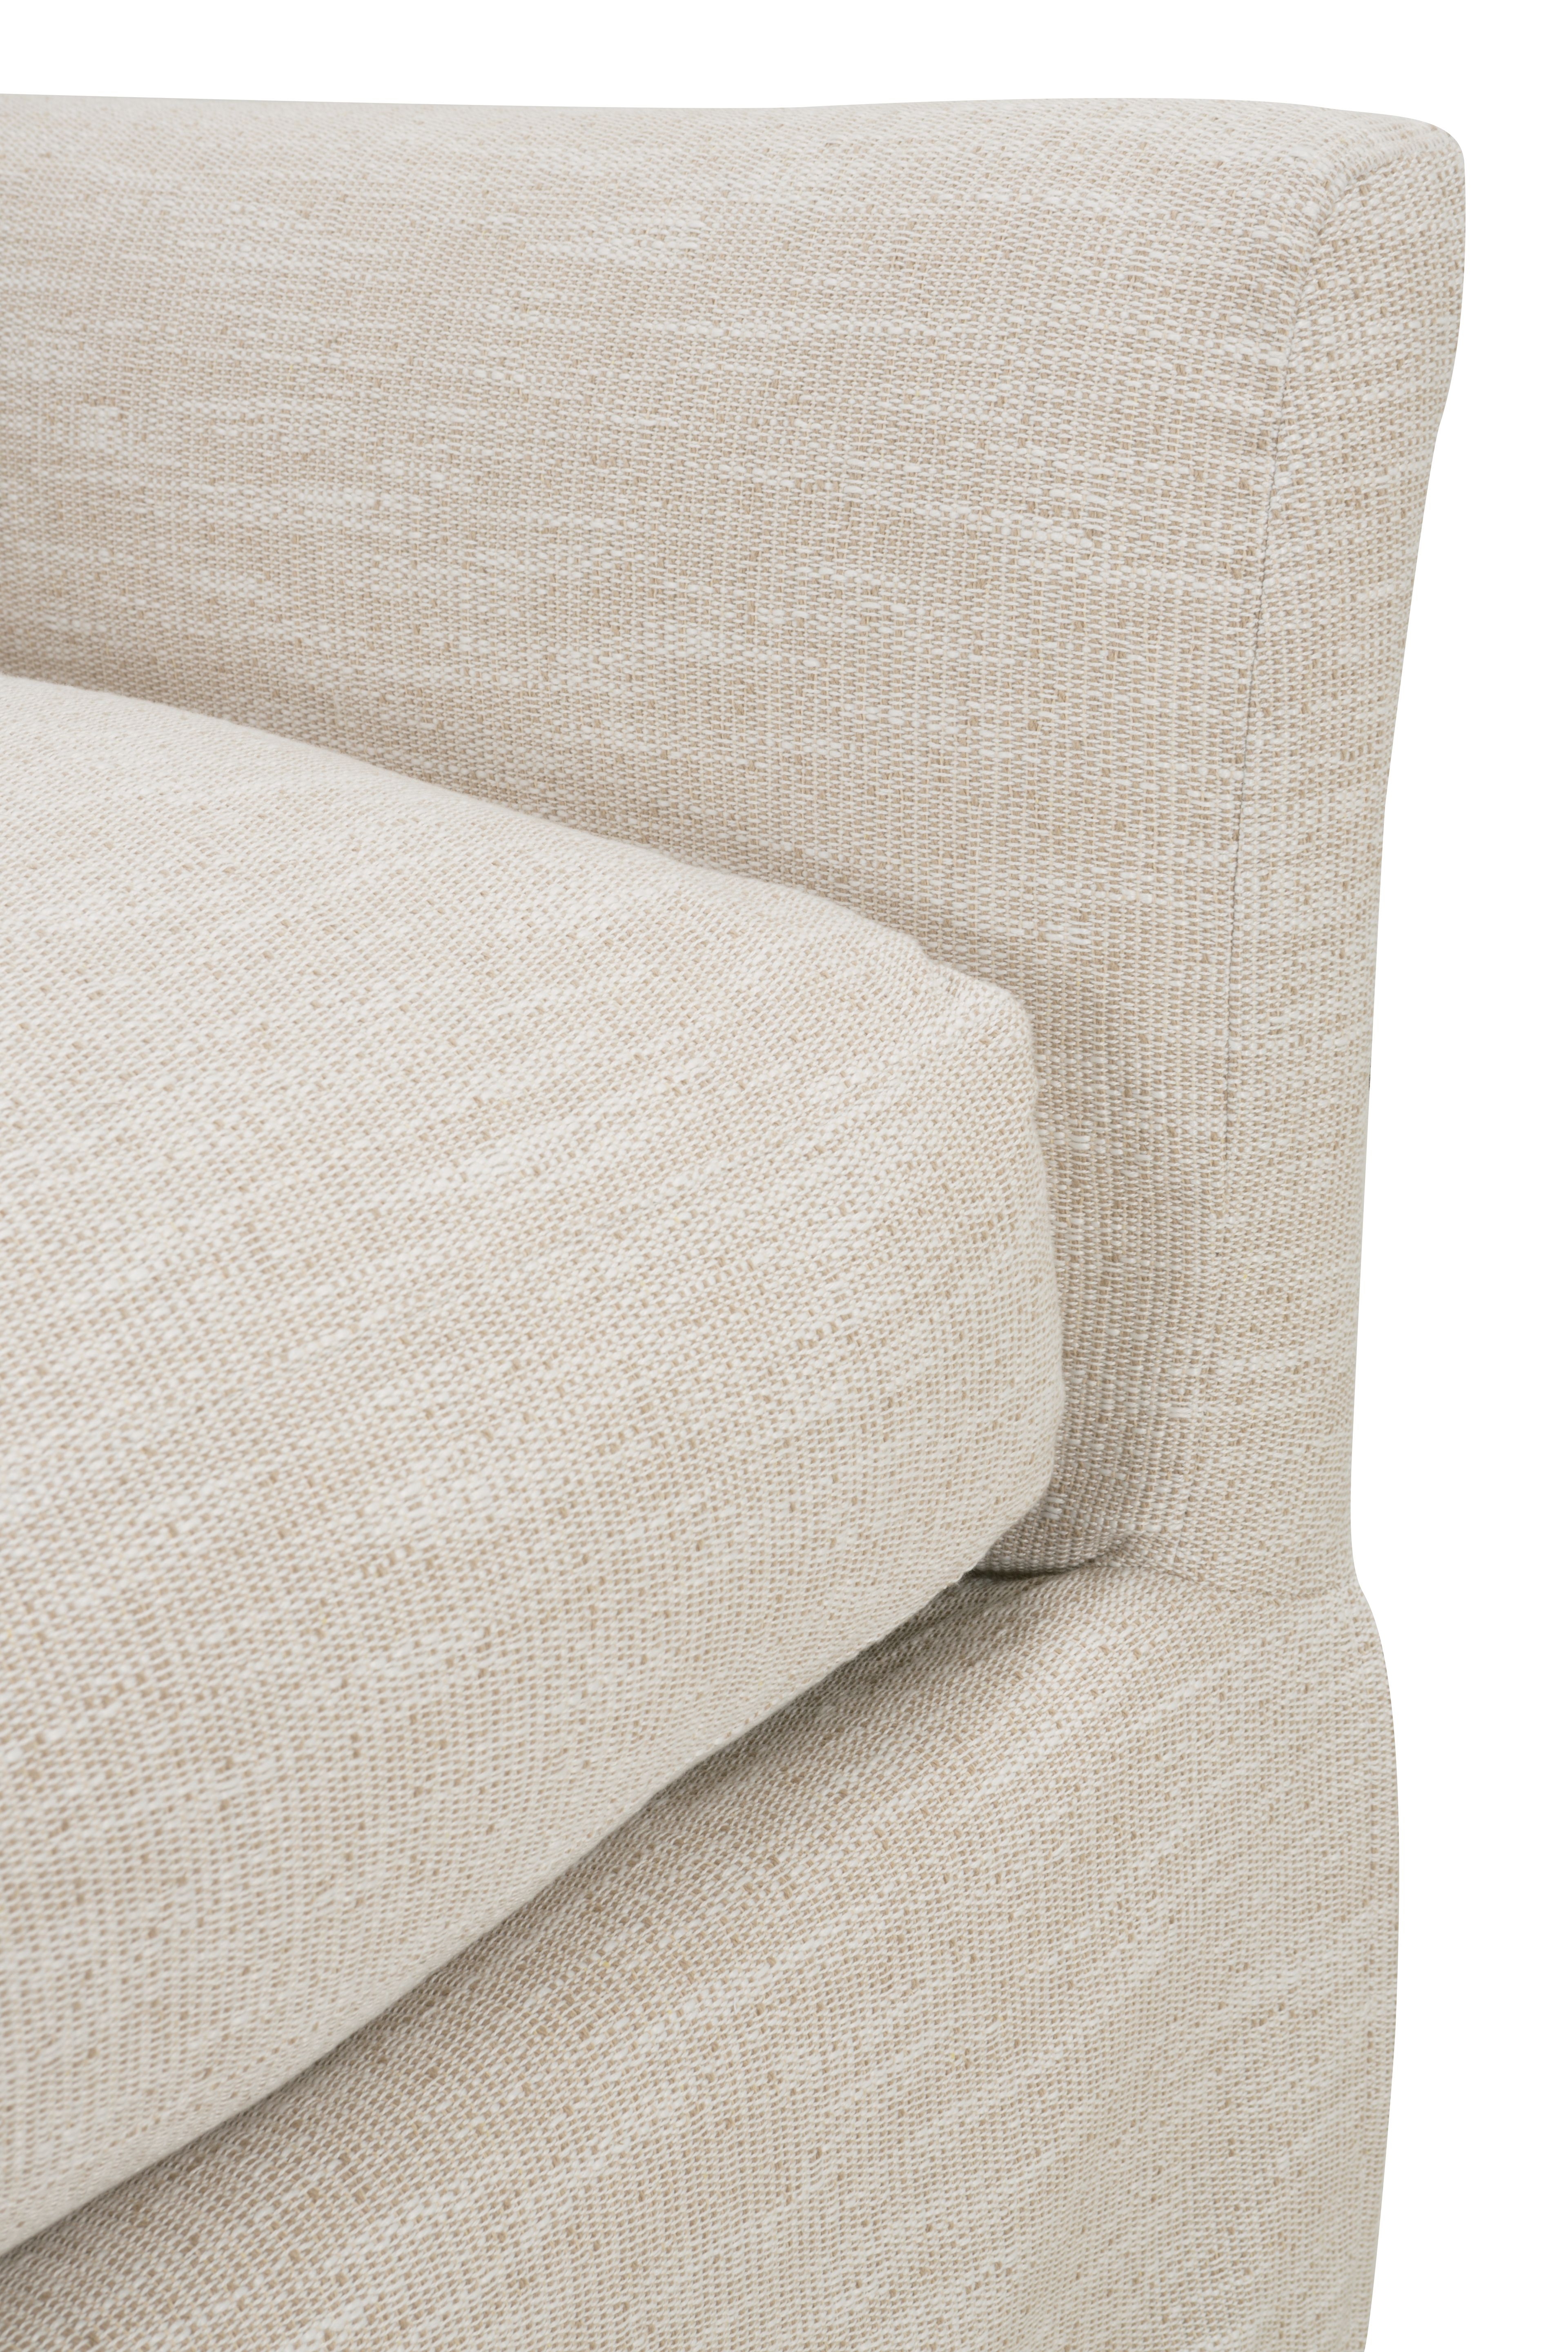 Moreau Slipcover Sofa, Bench Cushion, White, 95" - Image 12